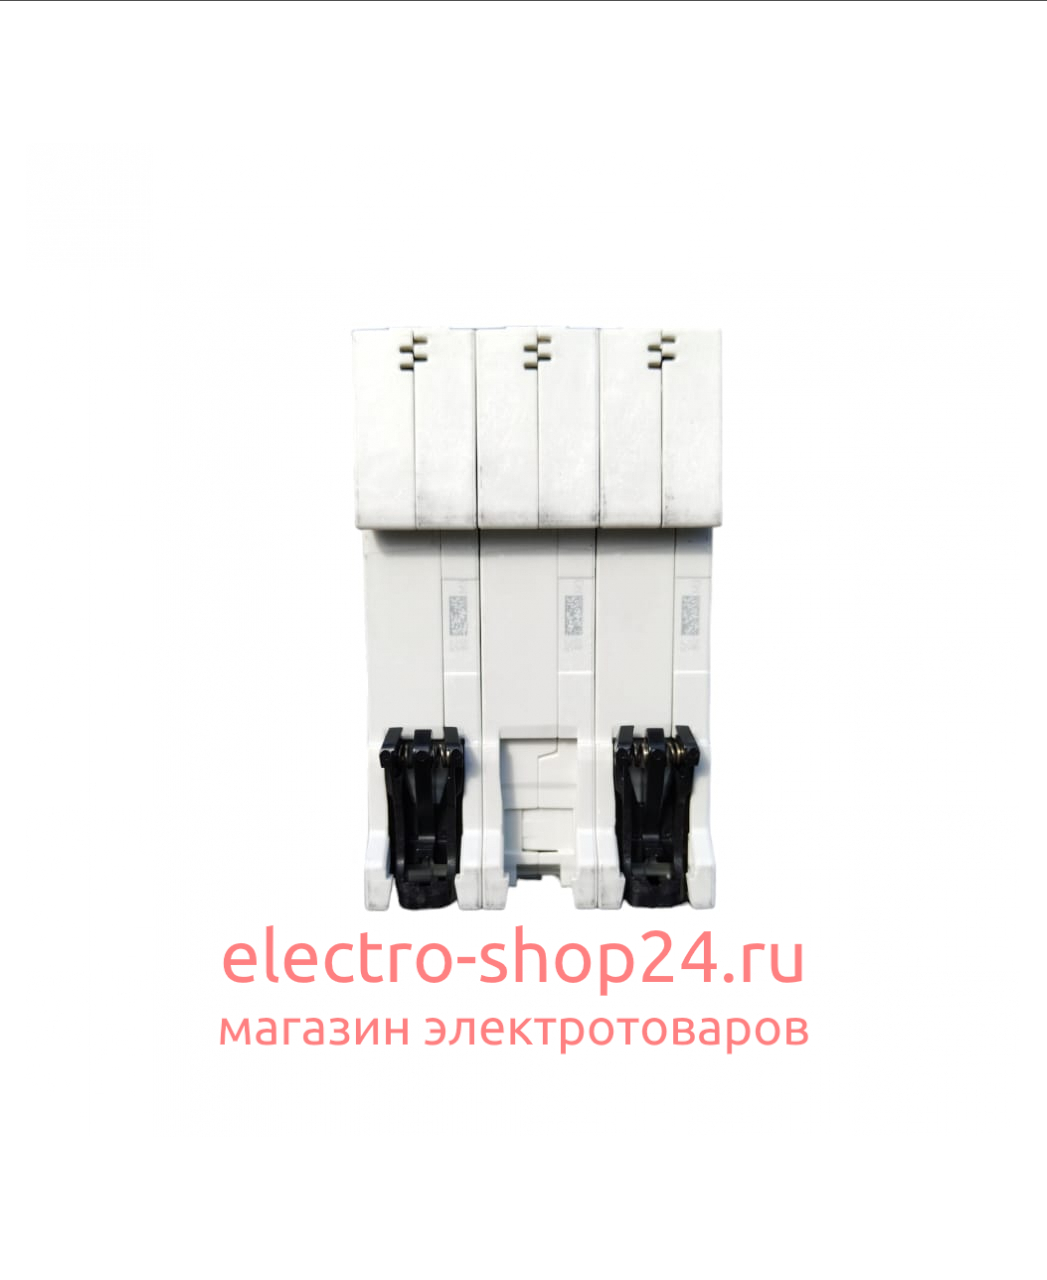 S203 C6 Автоматический выключатель 3-полюсный 6А 6кА (хар-ка C) ABB 2CDS253001R0064 2CDS253001R0064 - магазин электротехники Electroshop